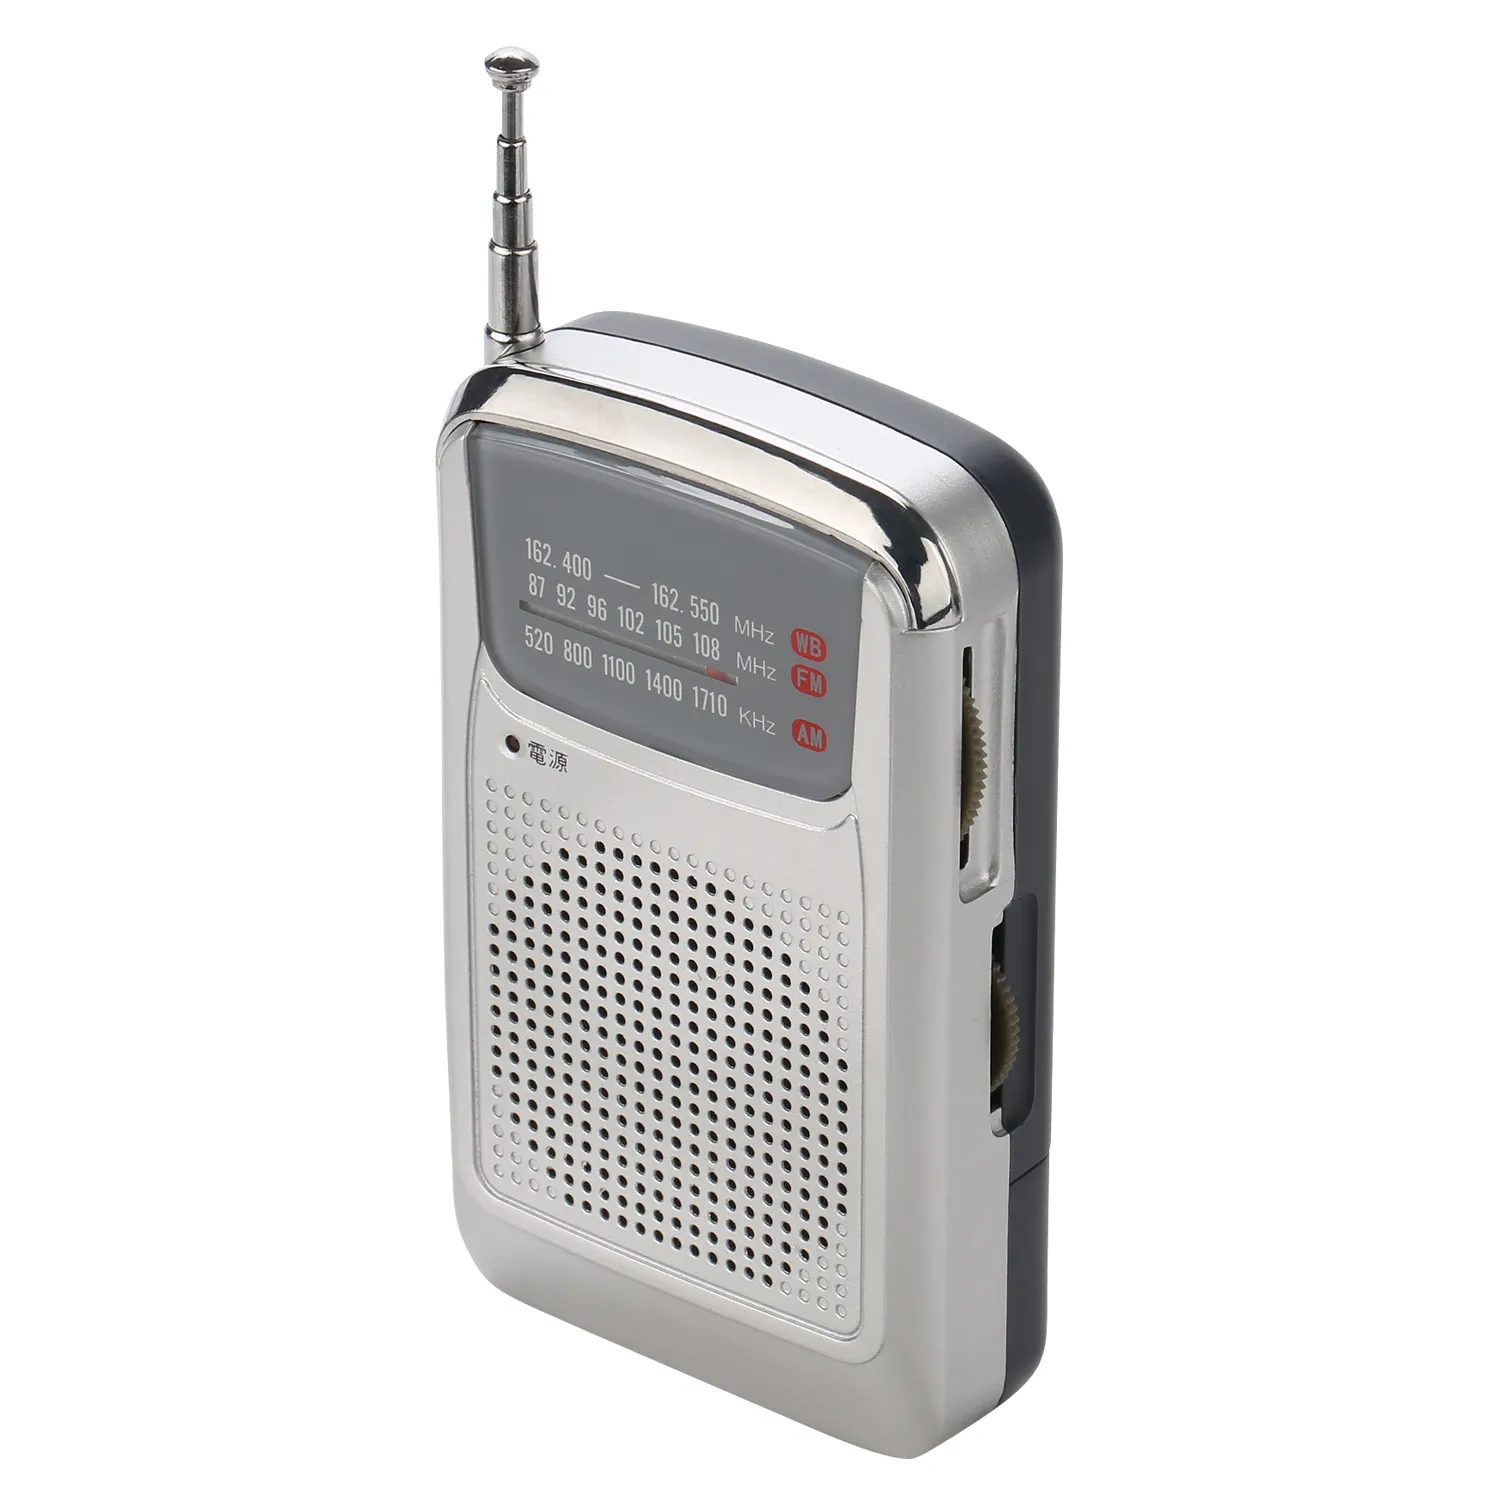 China hot verkoop zakformaat radio kit met ingebouwde radio speaker analoge am fm radio